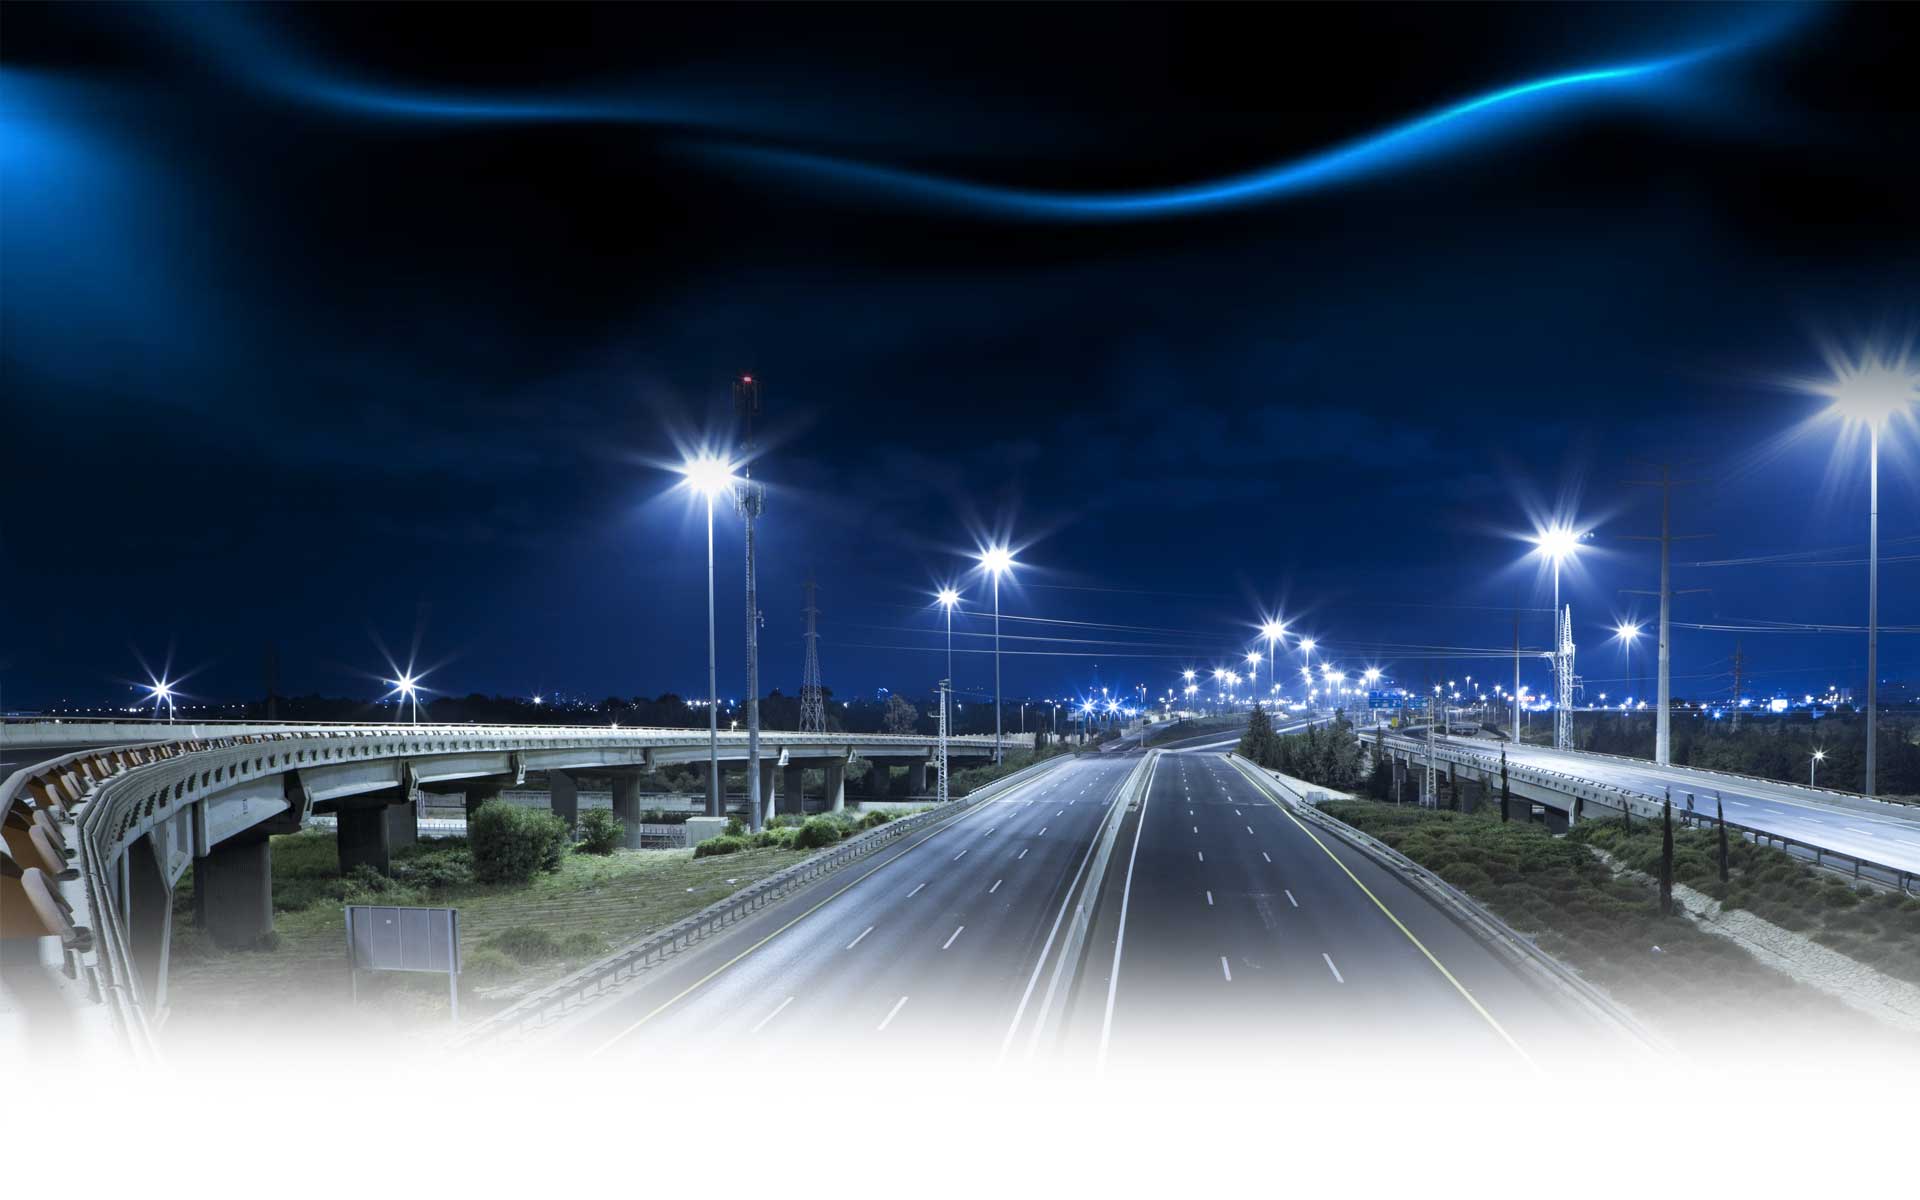 Cải tạo, nâng cấp hệ thống chiếu sáng công cộng thành phố Gia Nghĩa bằng công nghệ đèn Led